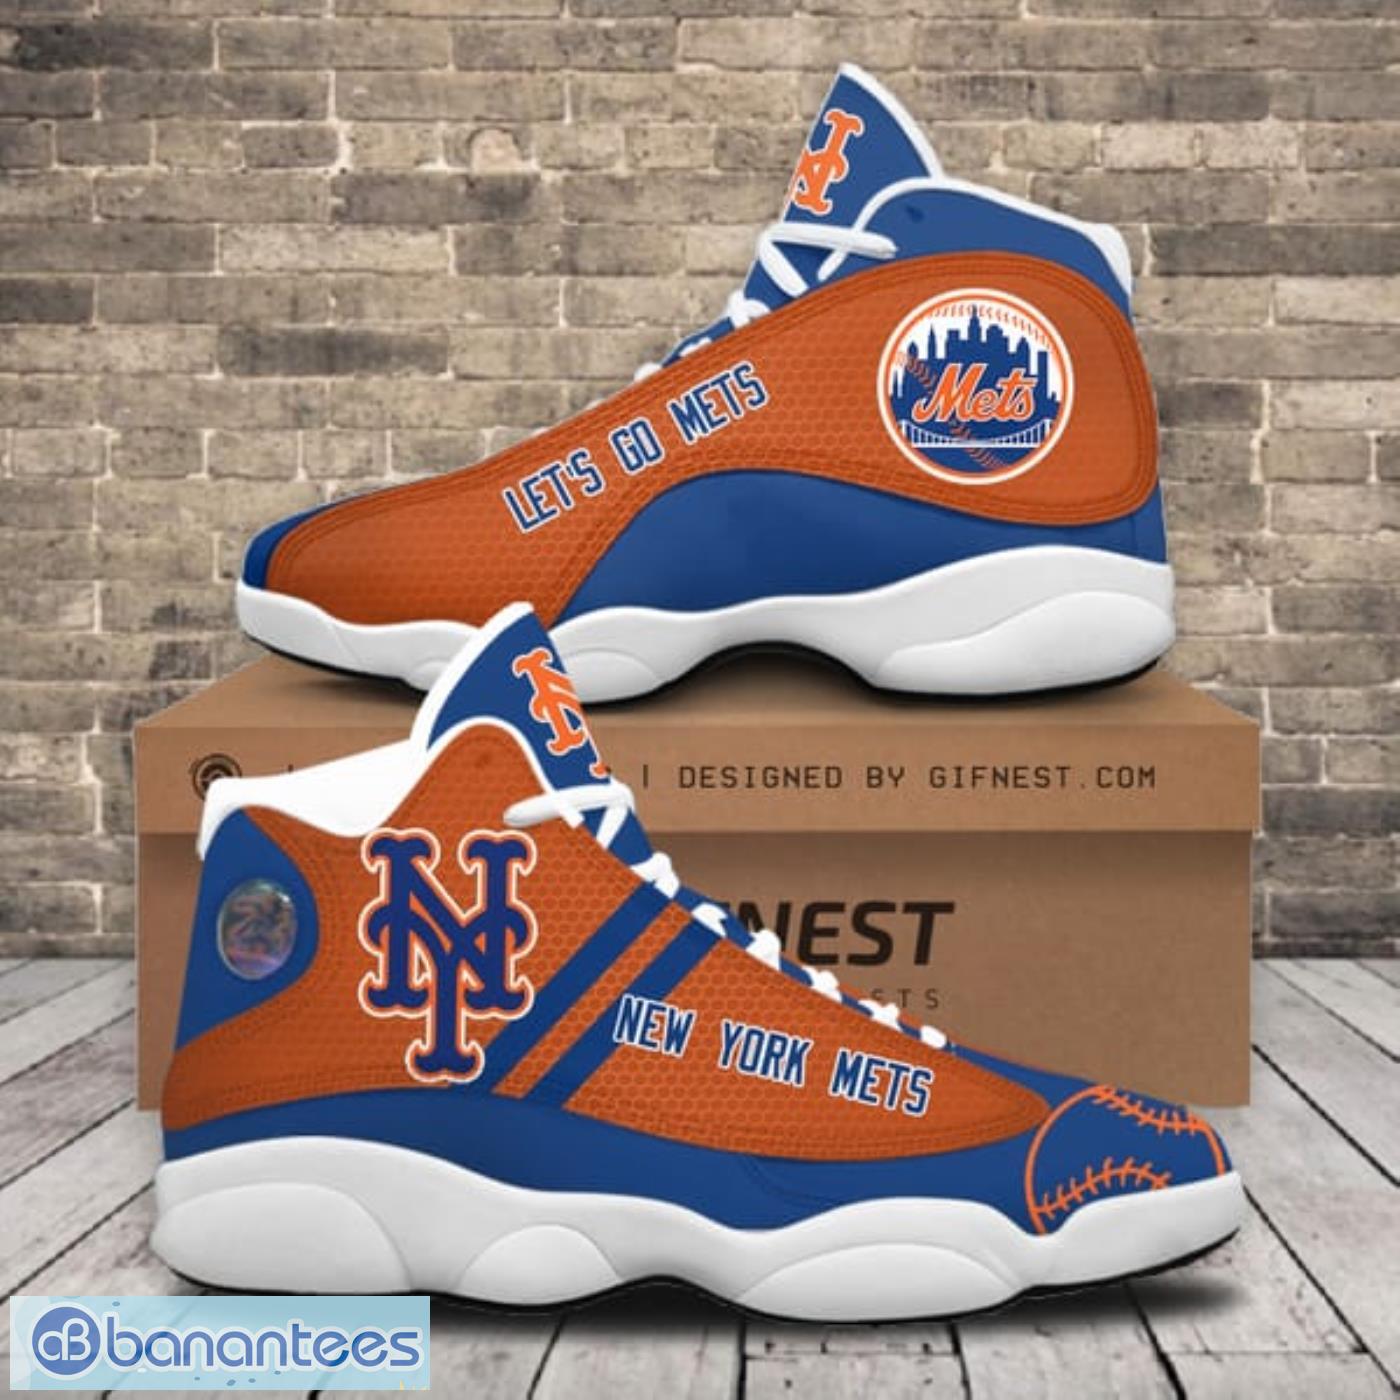 New York Yankees Edition Air Jordan 13 Sneakers Best Gift For Men